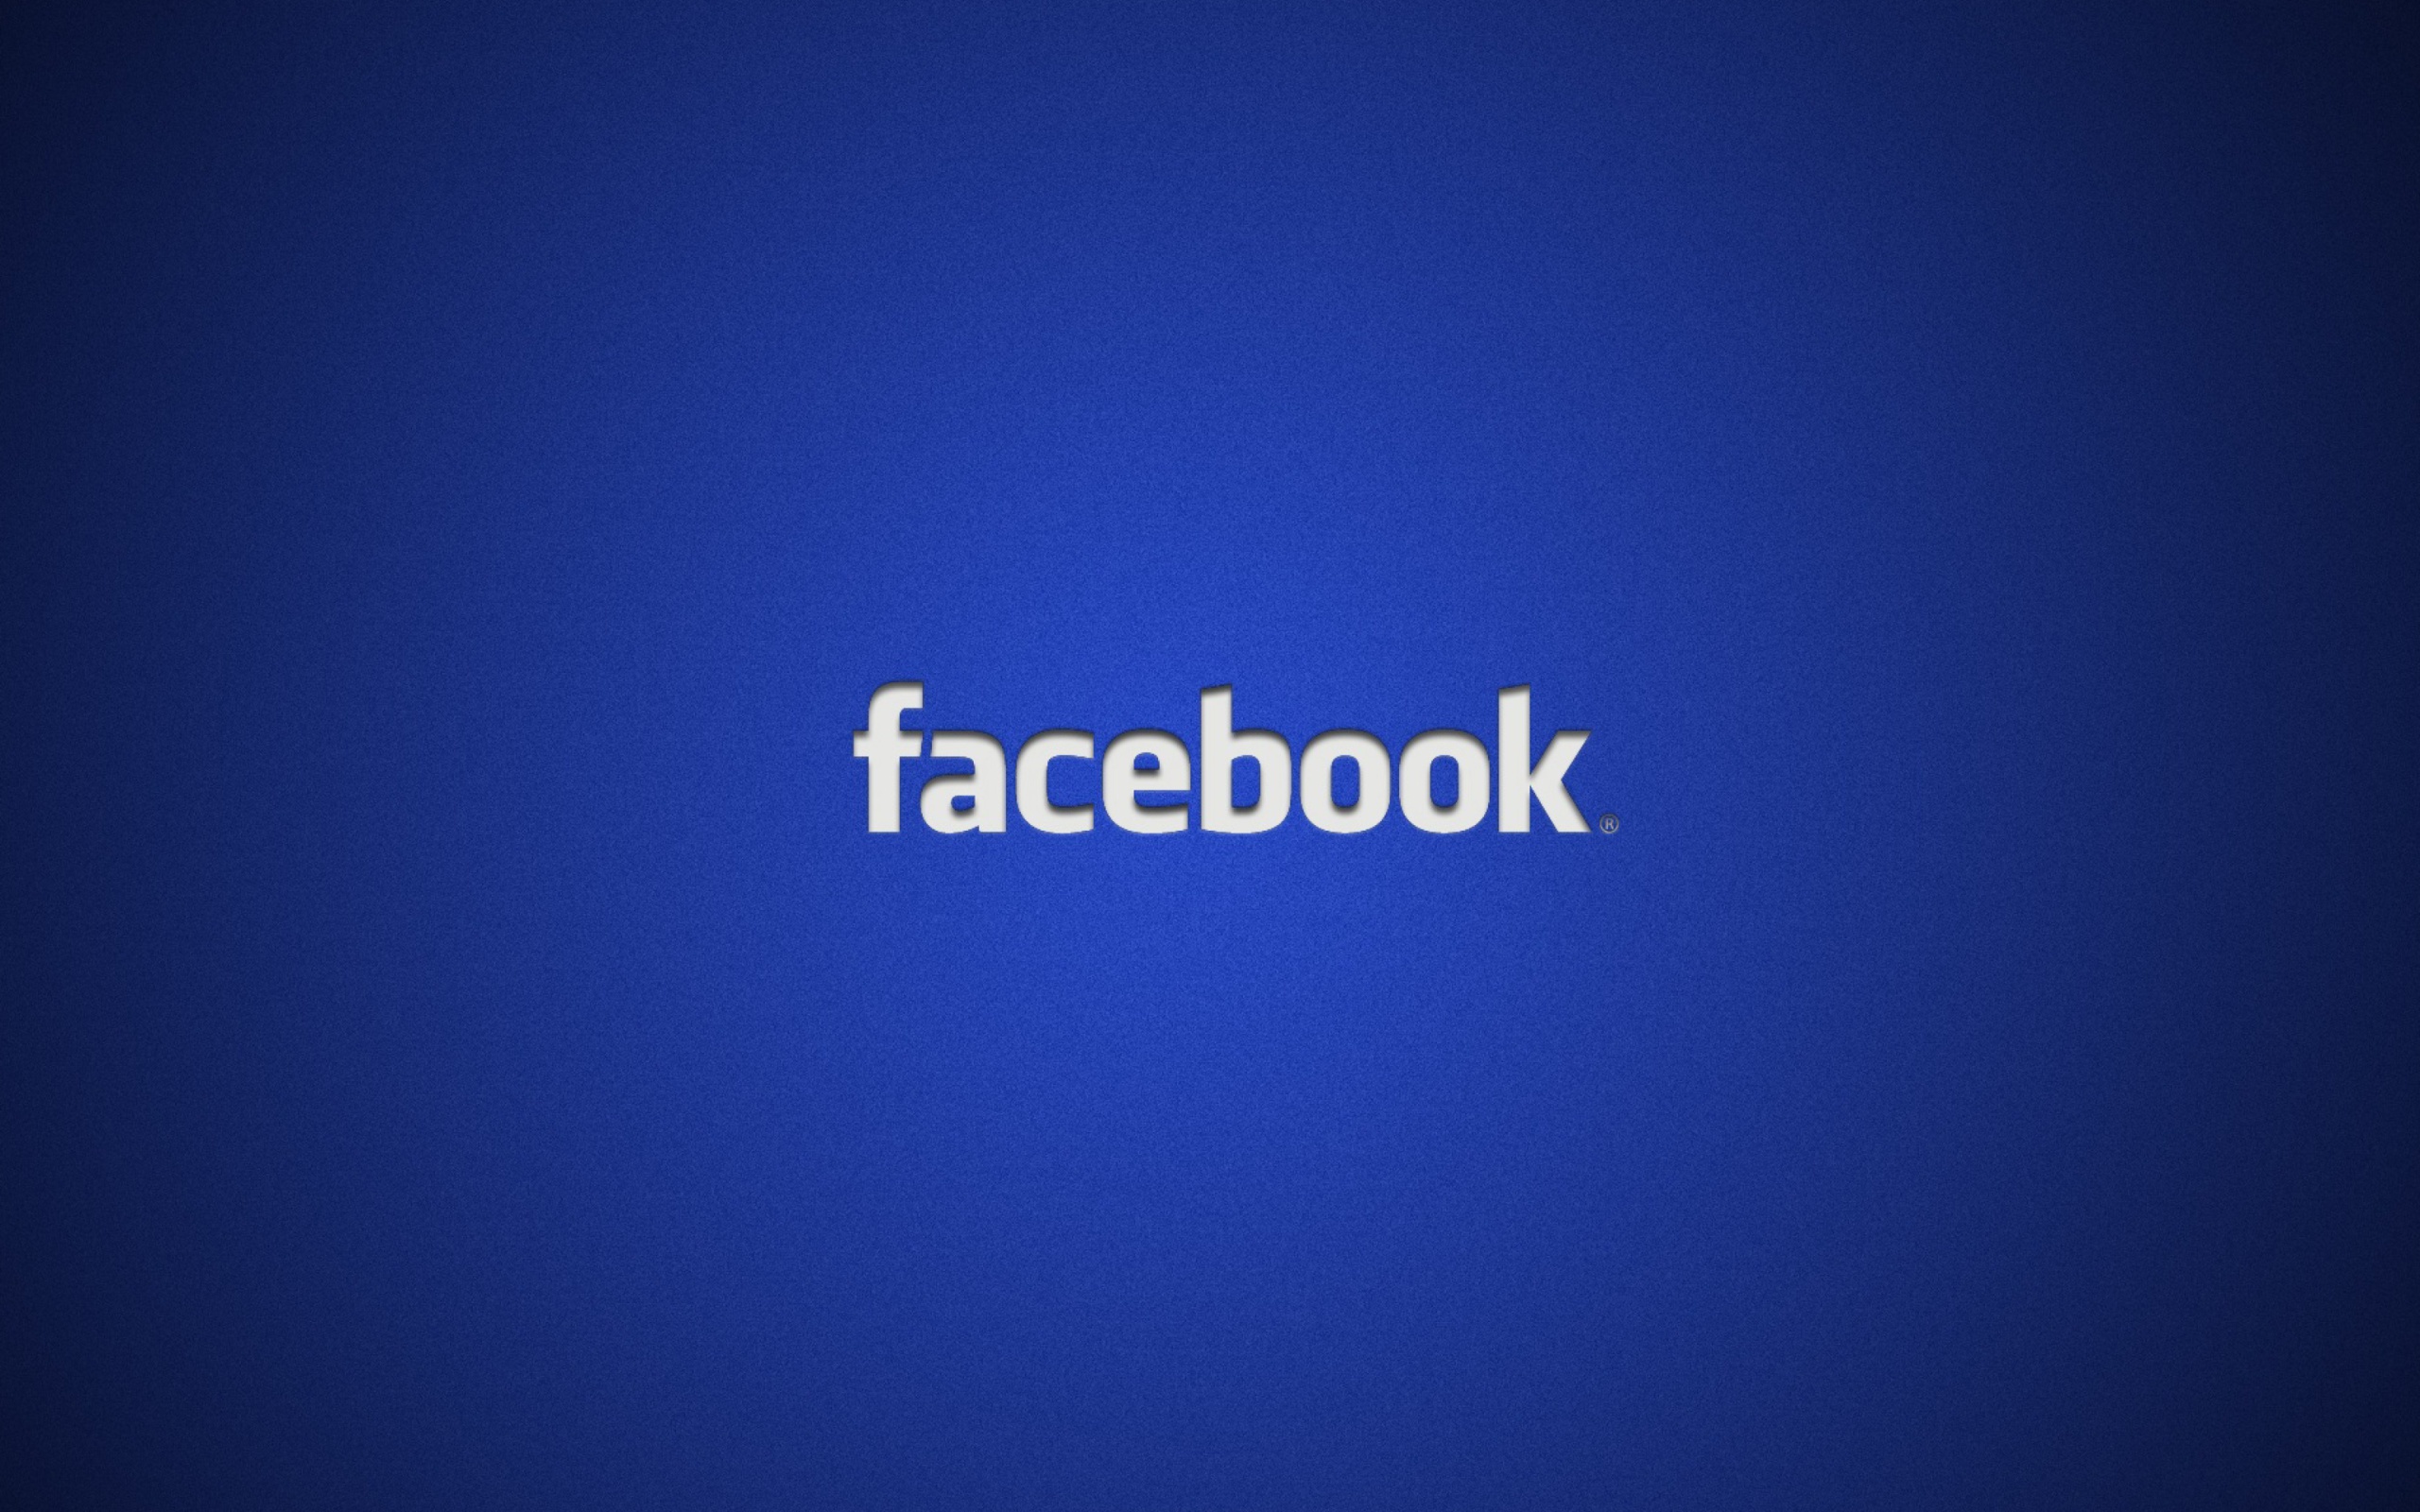 Facebook Logo wallpaper 2560x1600